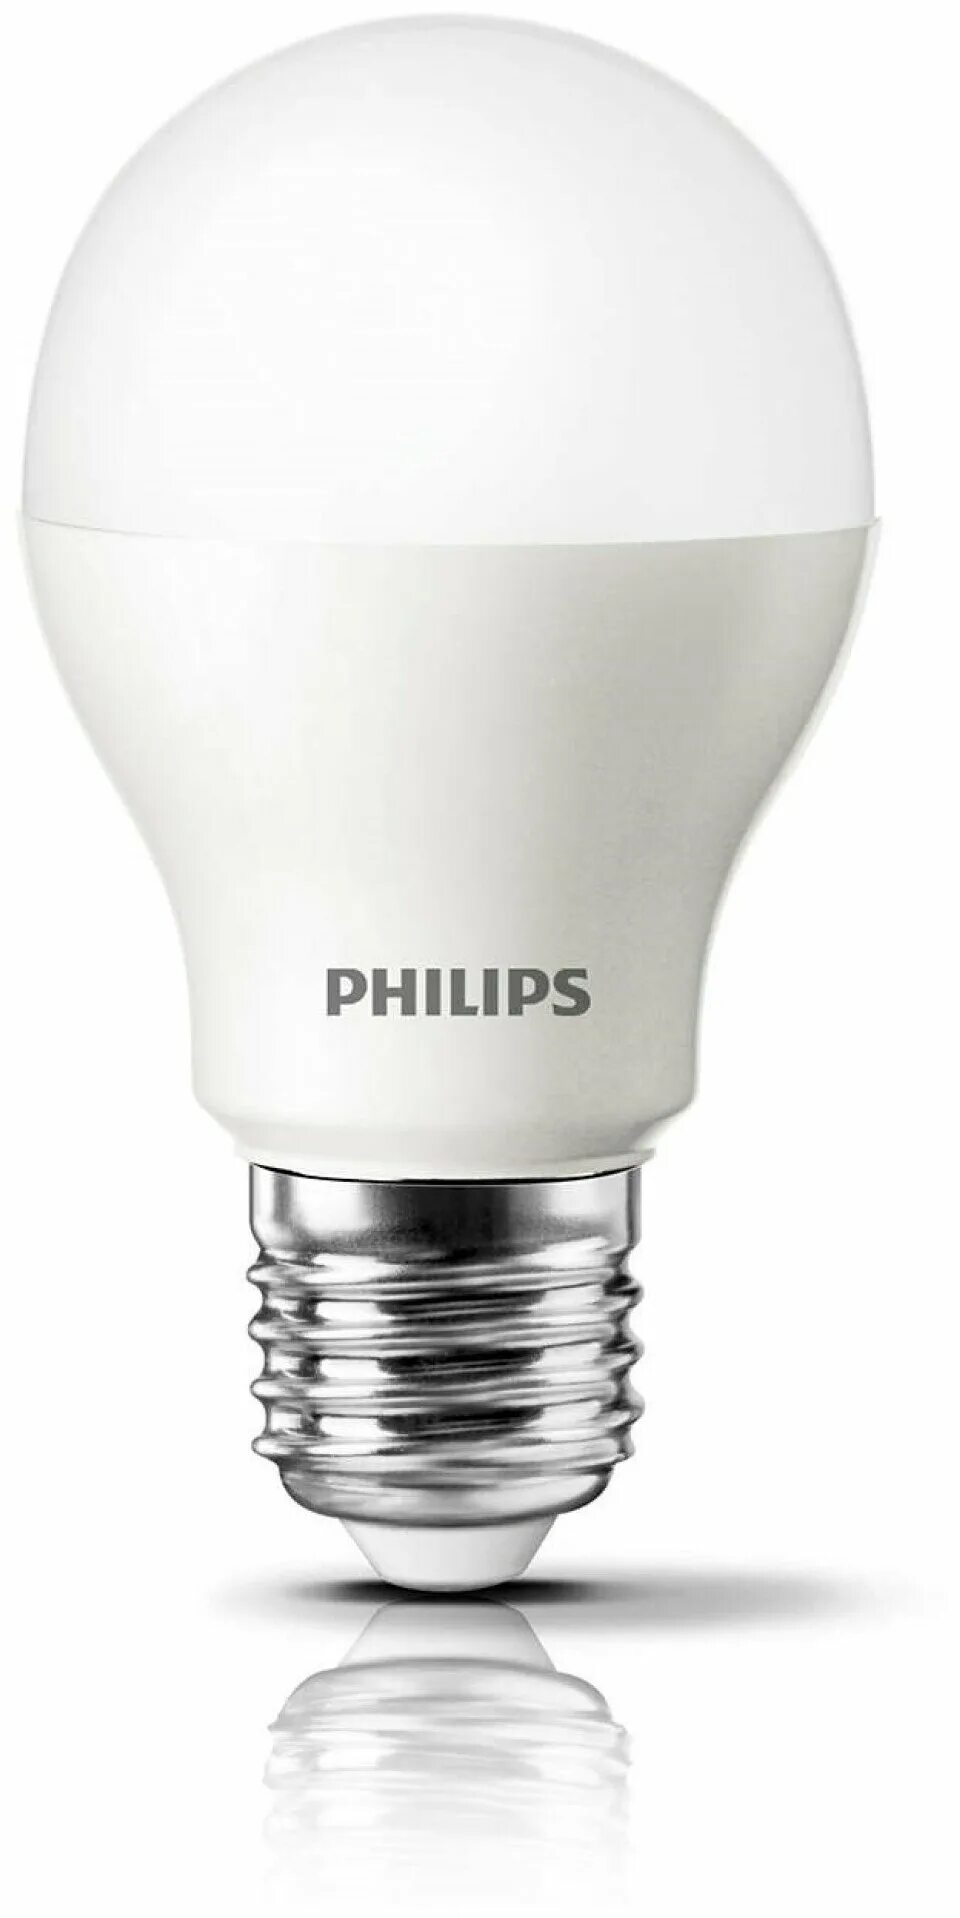 Купить лампочки philips. Лампа светодиодная Philips ESS LEDBULB, e27, a60, 9вт. Лампа светодиодная ESS LEDBULB 11вт e27. Лампа светодиодная Philips led 6500k, e27, a60, 8вт. Лампа светодиодная ОНЛАЙТ 388148, e27, c37, 6вт.